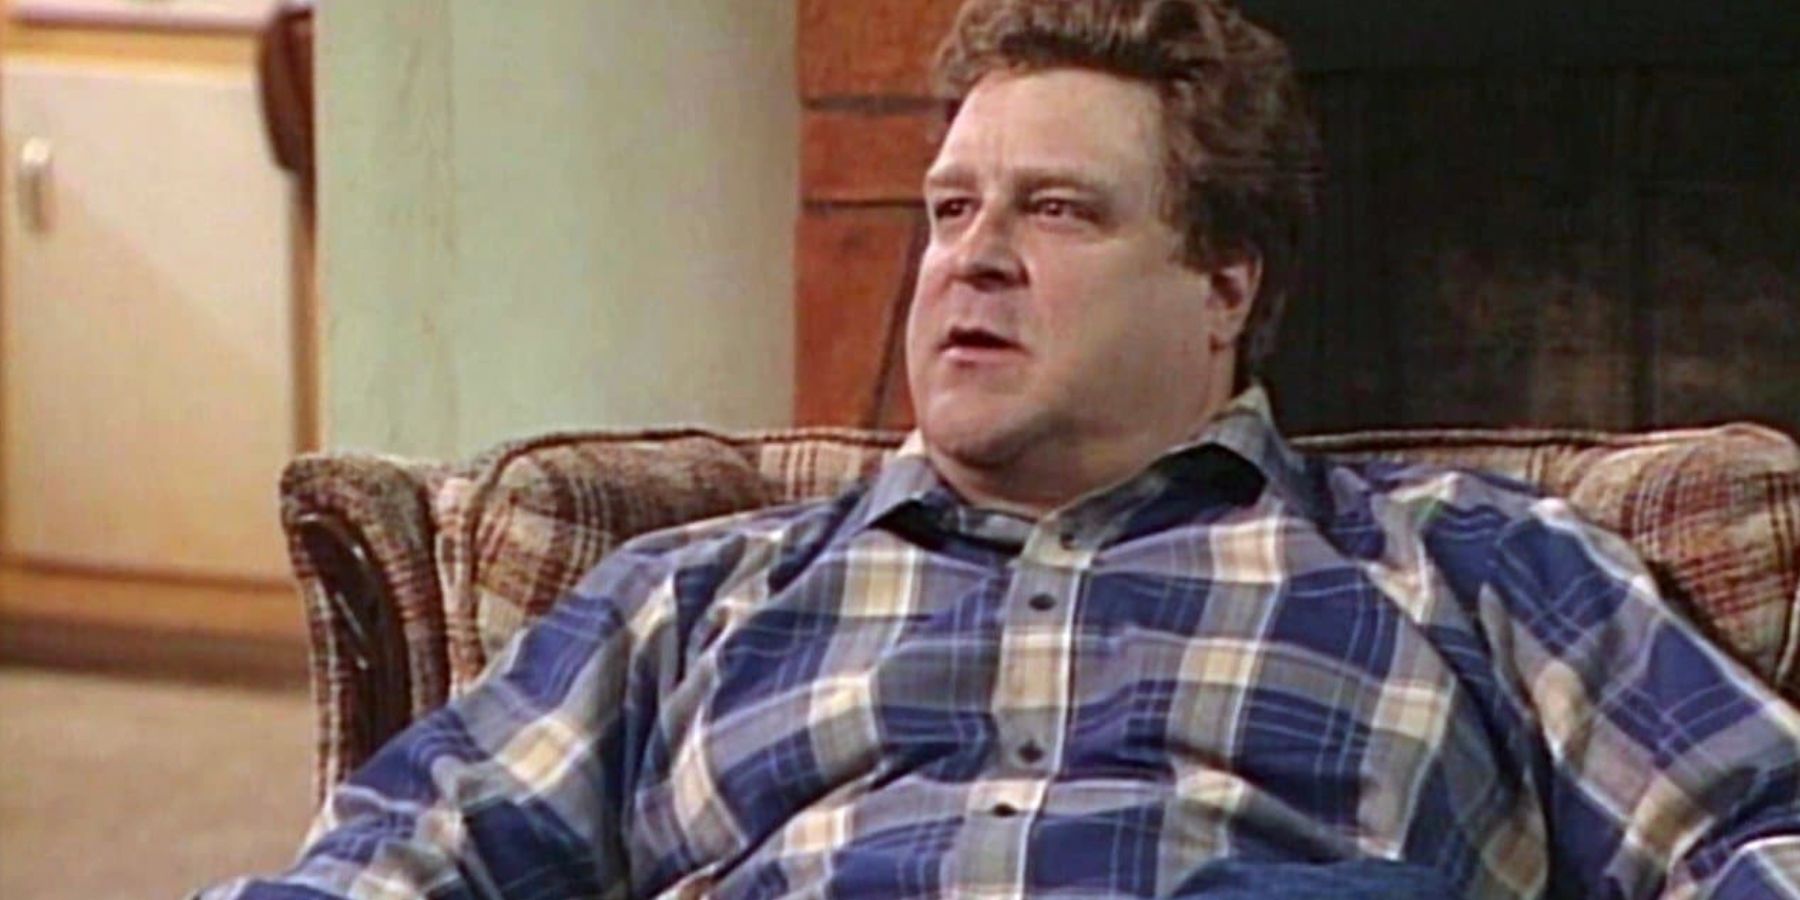 John Goodman as Dan sitting in his chair in the Roseanne episode The Courtship of Eddie